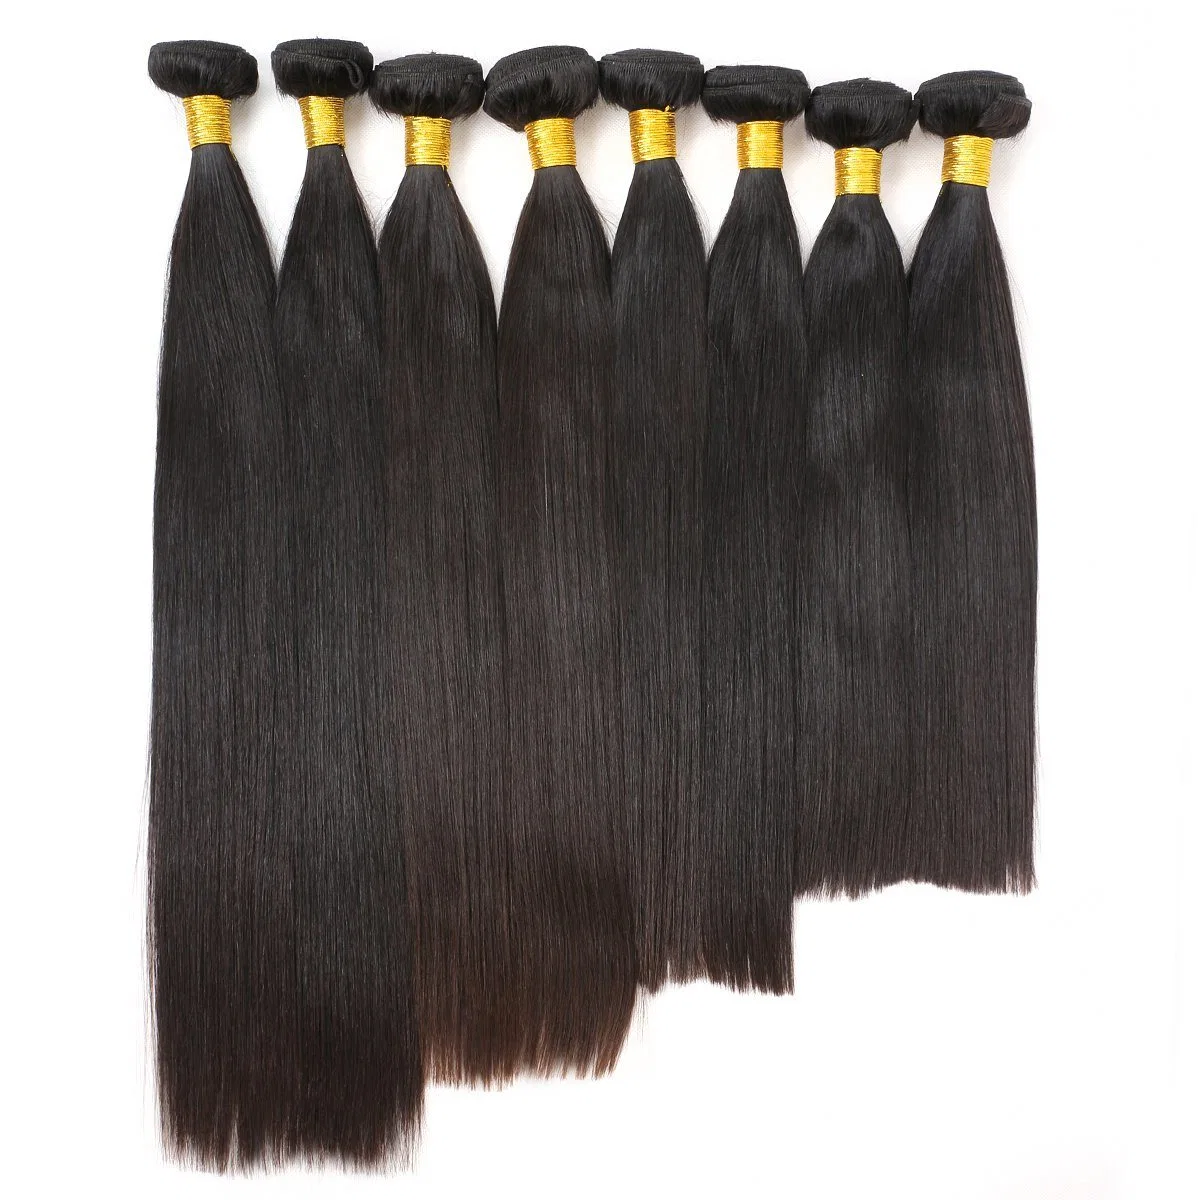 La belleza en línea recta de Malasia Brasileño de color negro natural del cabello el cabello humano 100% de los paquetes de tejer el Cabello Remy 8-28 pulgadas